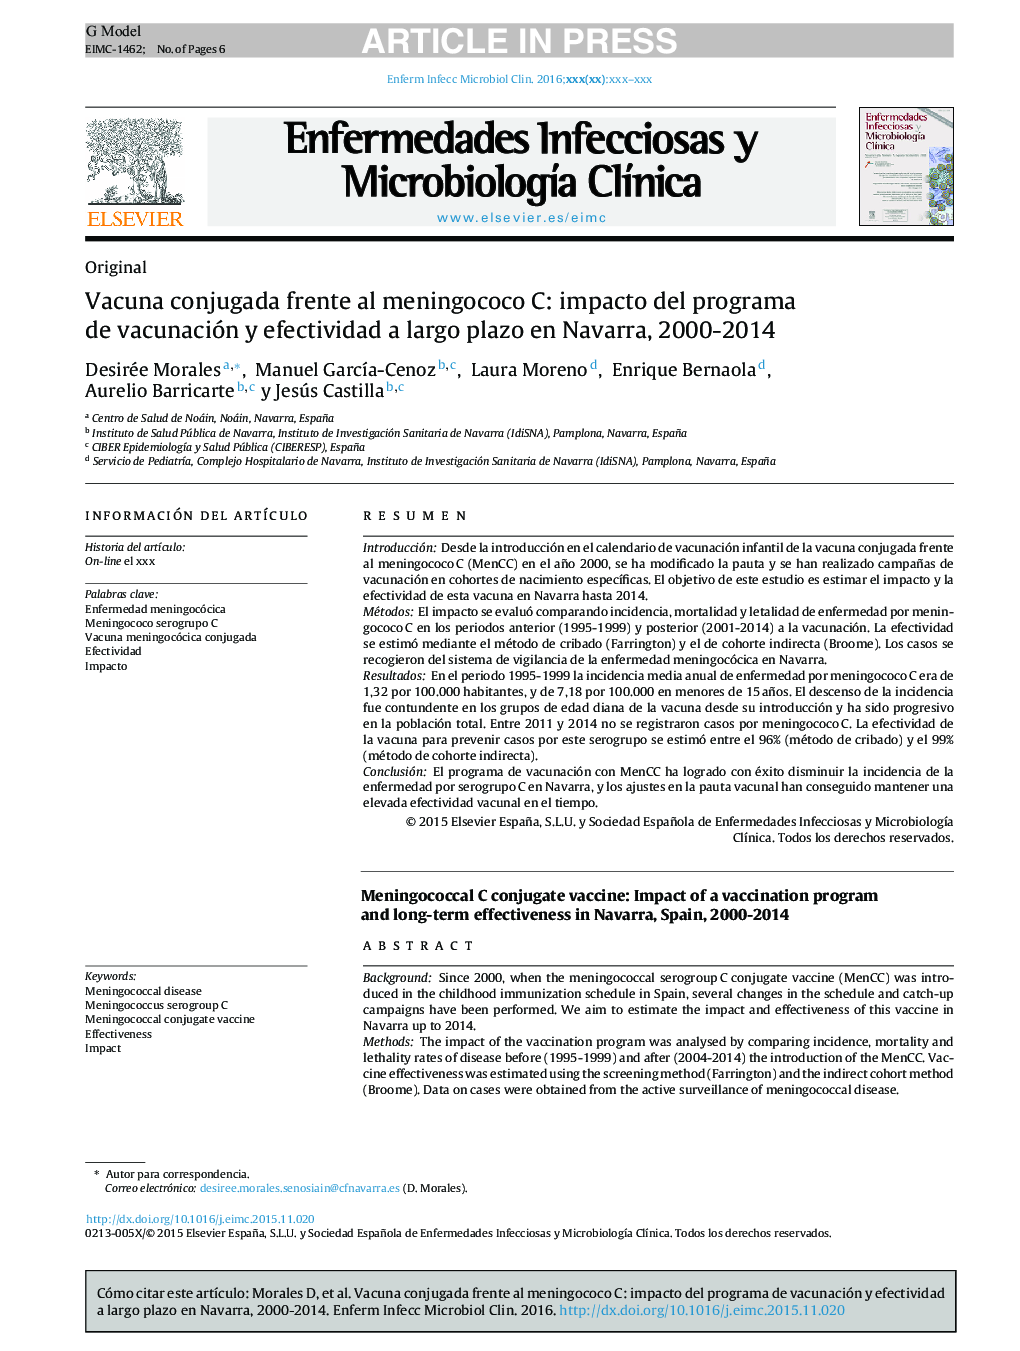 Vacuna conjugada frente al meningococo C: impacto del programa de vacunación y efectividad a largo plazo en Navarra, 2000-2014